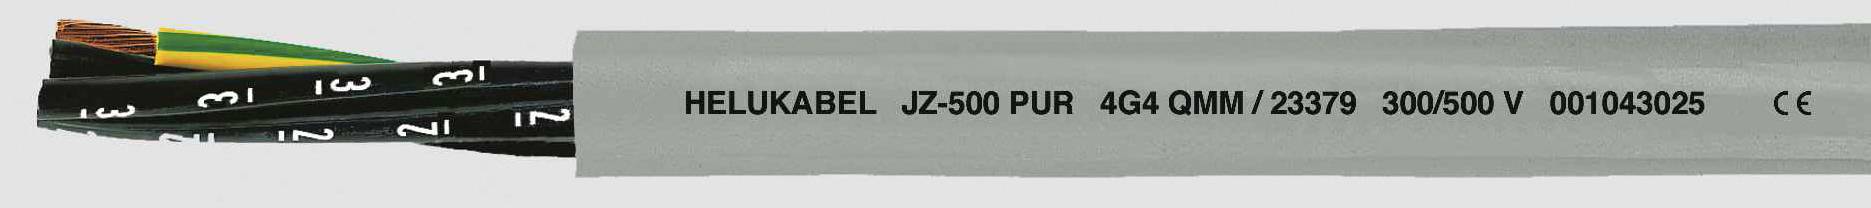 HELUKABEL JZ-500 PUR Steuerleitung 7 G 0.75 mm² Grau 23336-500 500 m